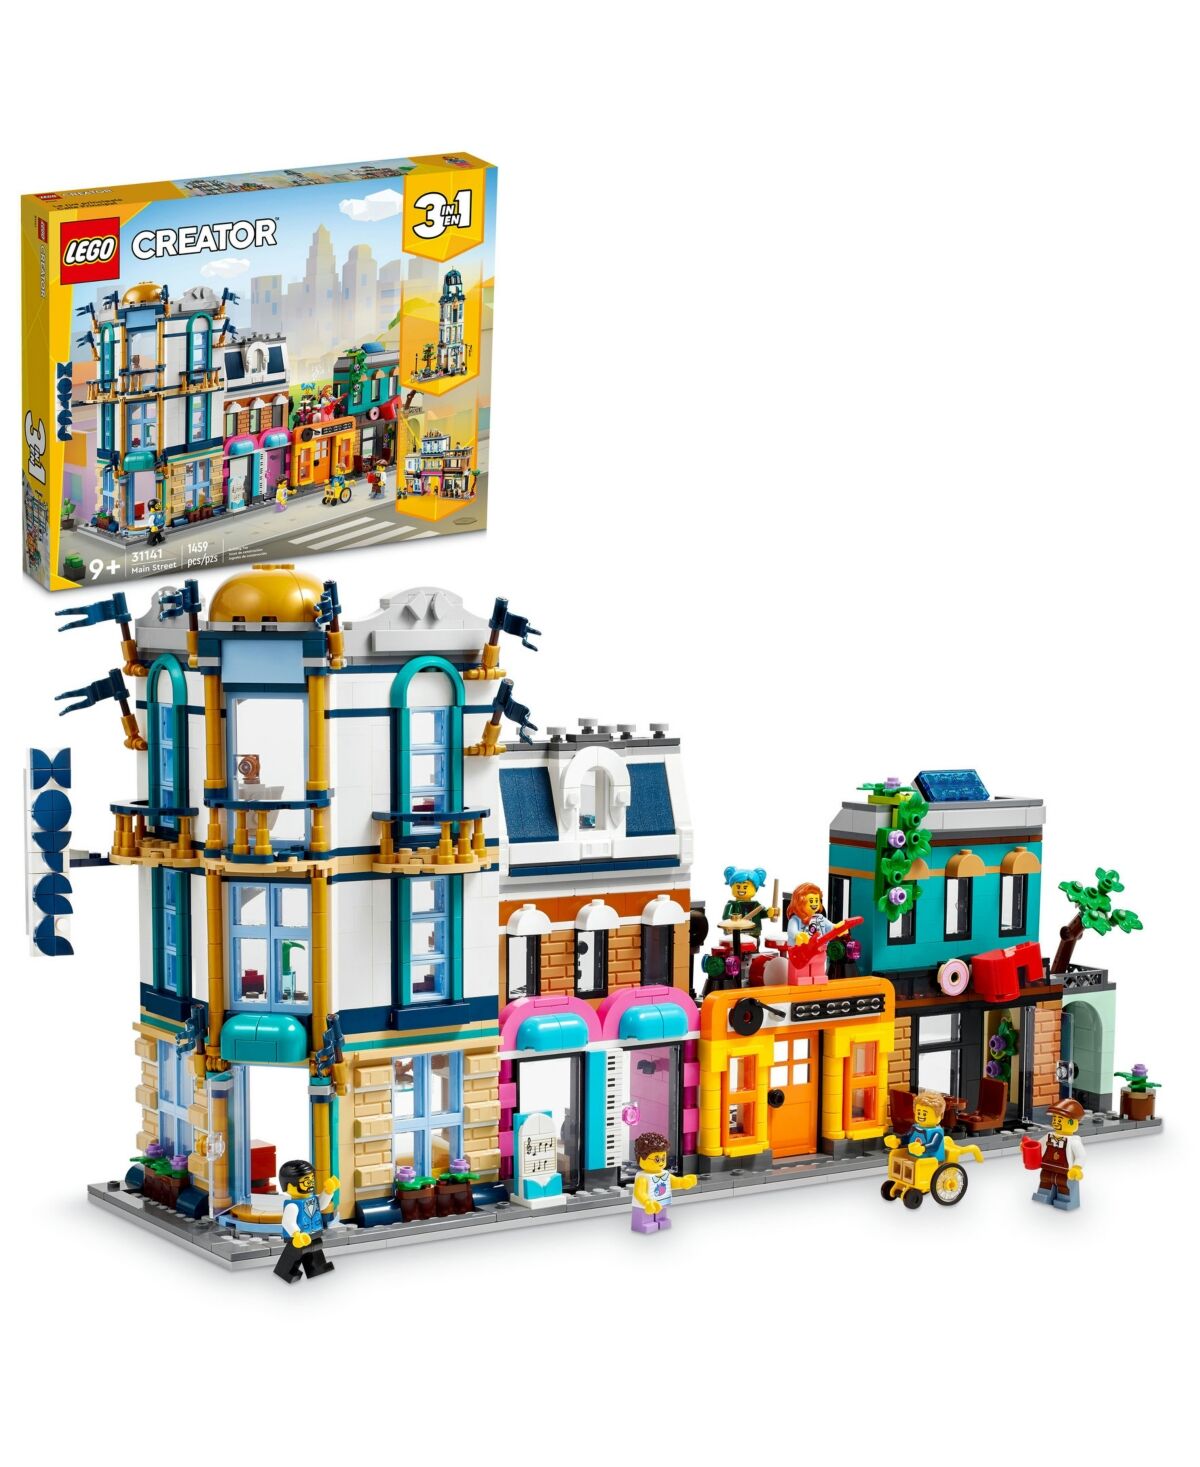 Lego Creator 31141 Main Street Toy Minifigure Building Set - Multicolor